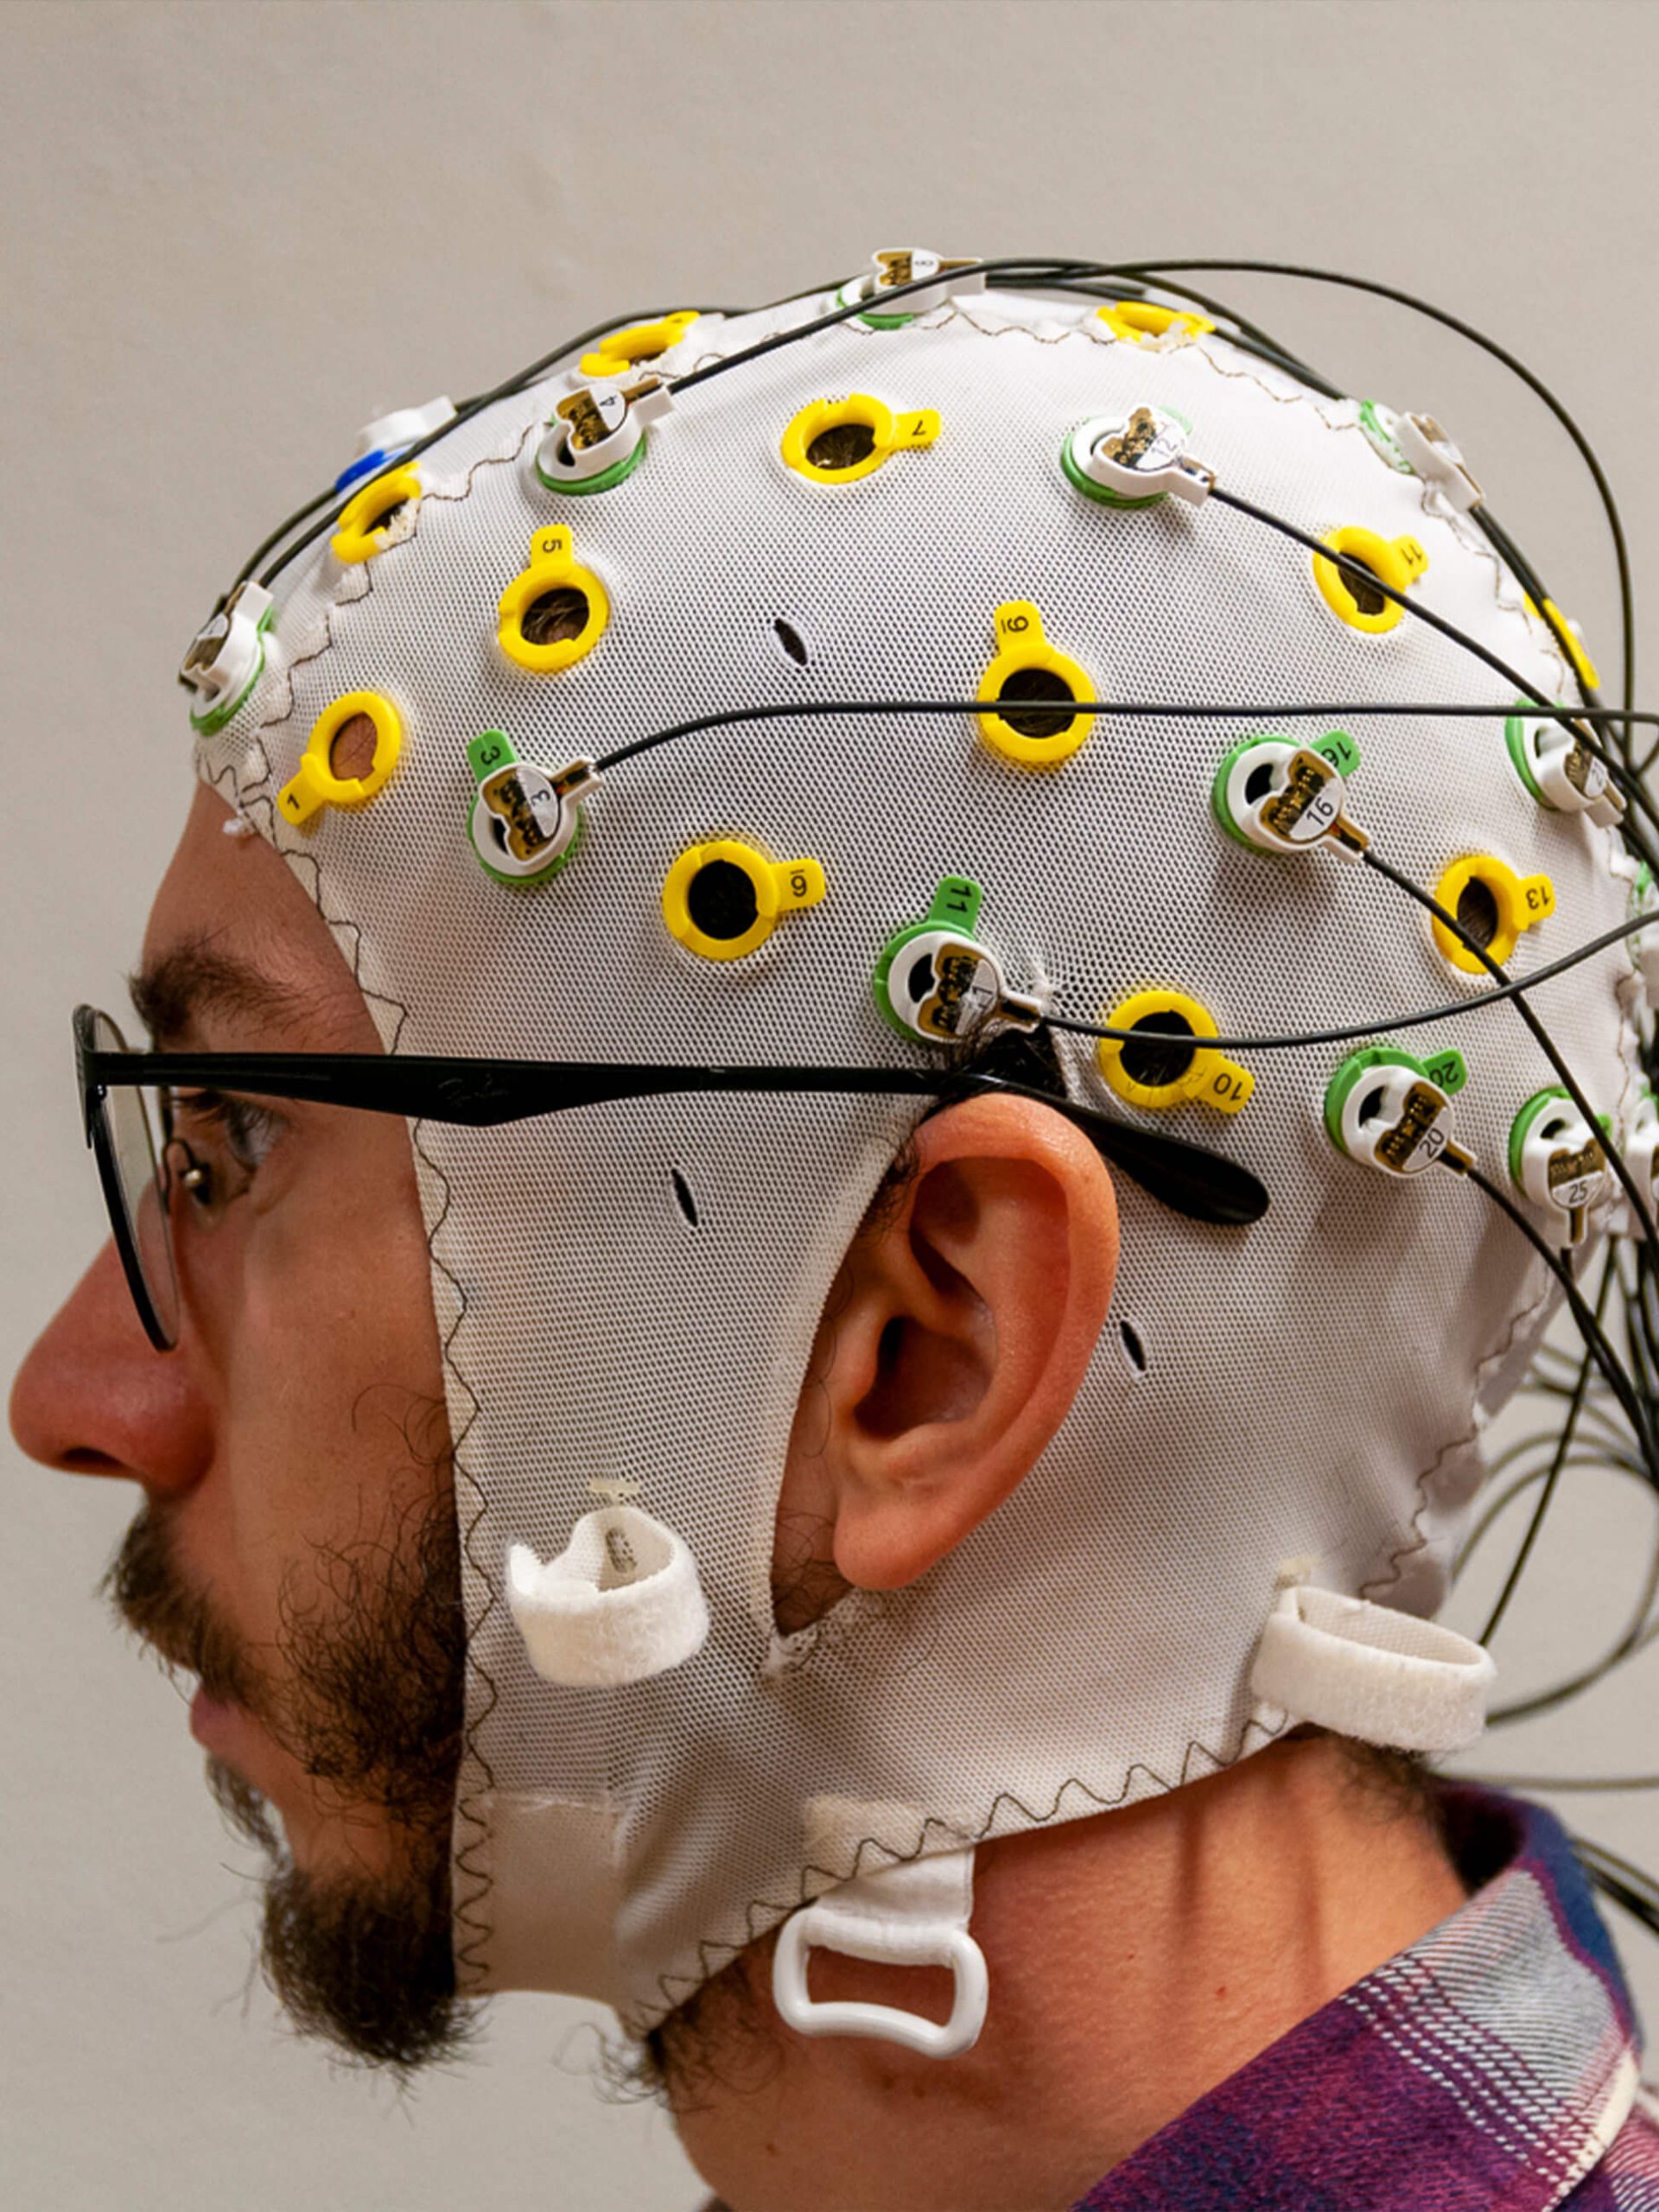 test subject wearing an EEG cap